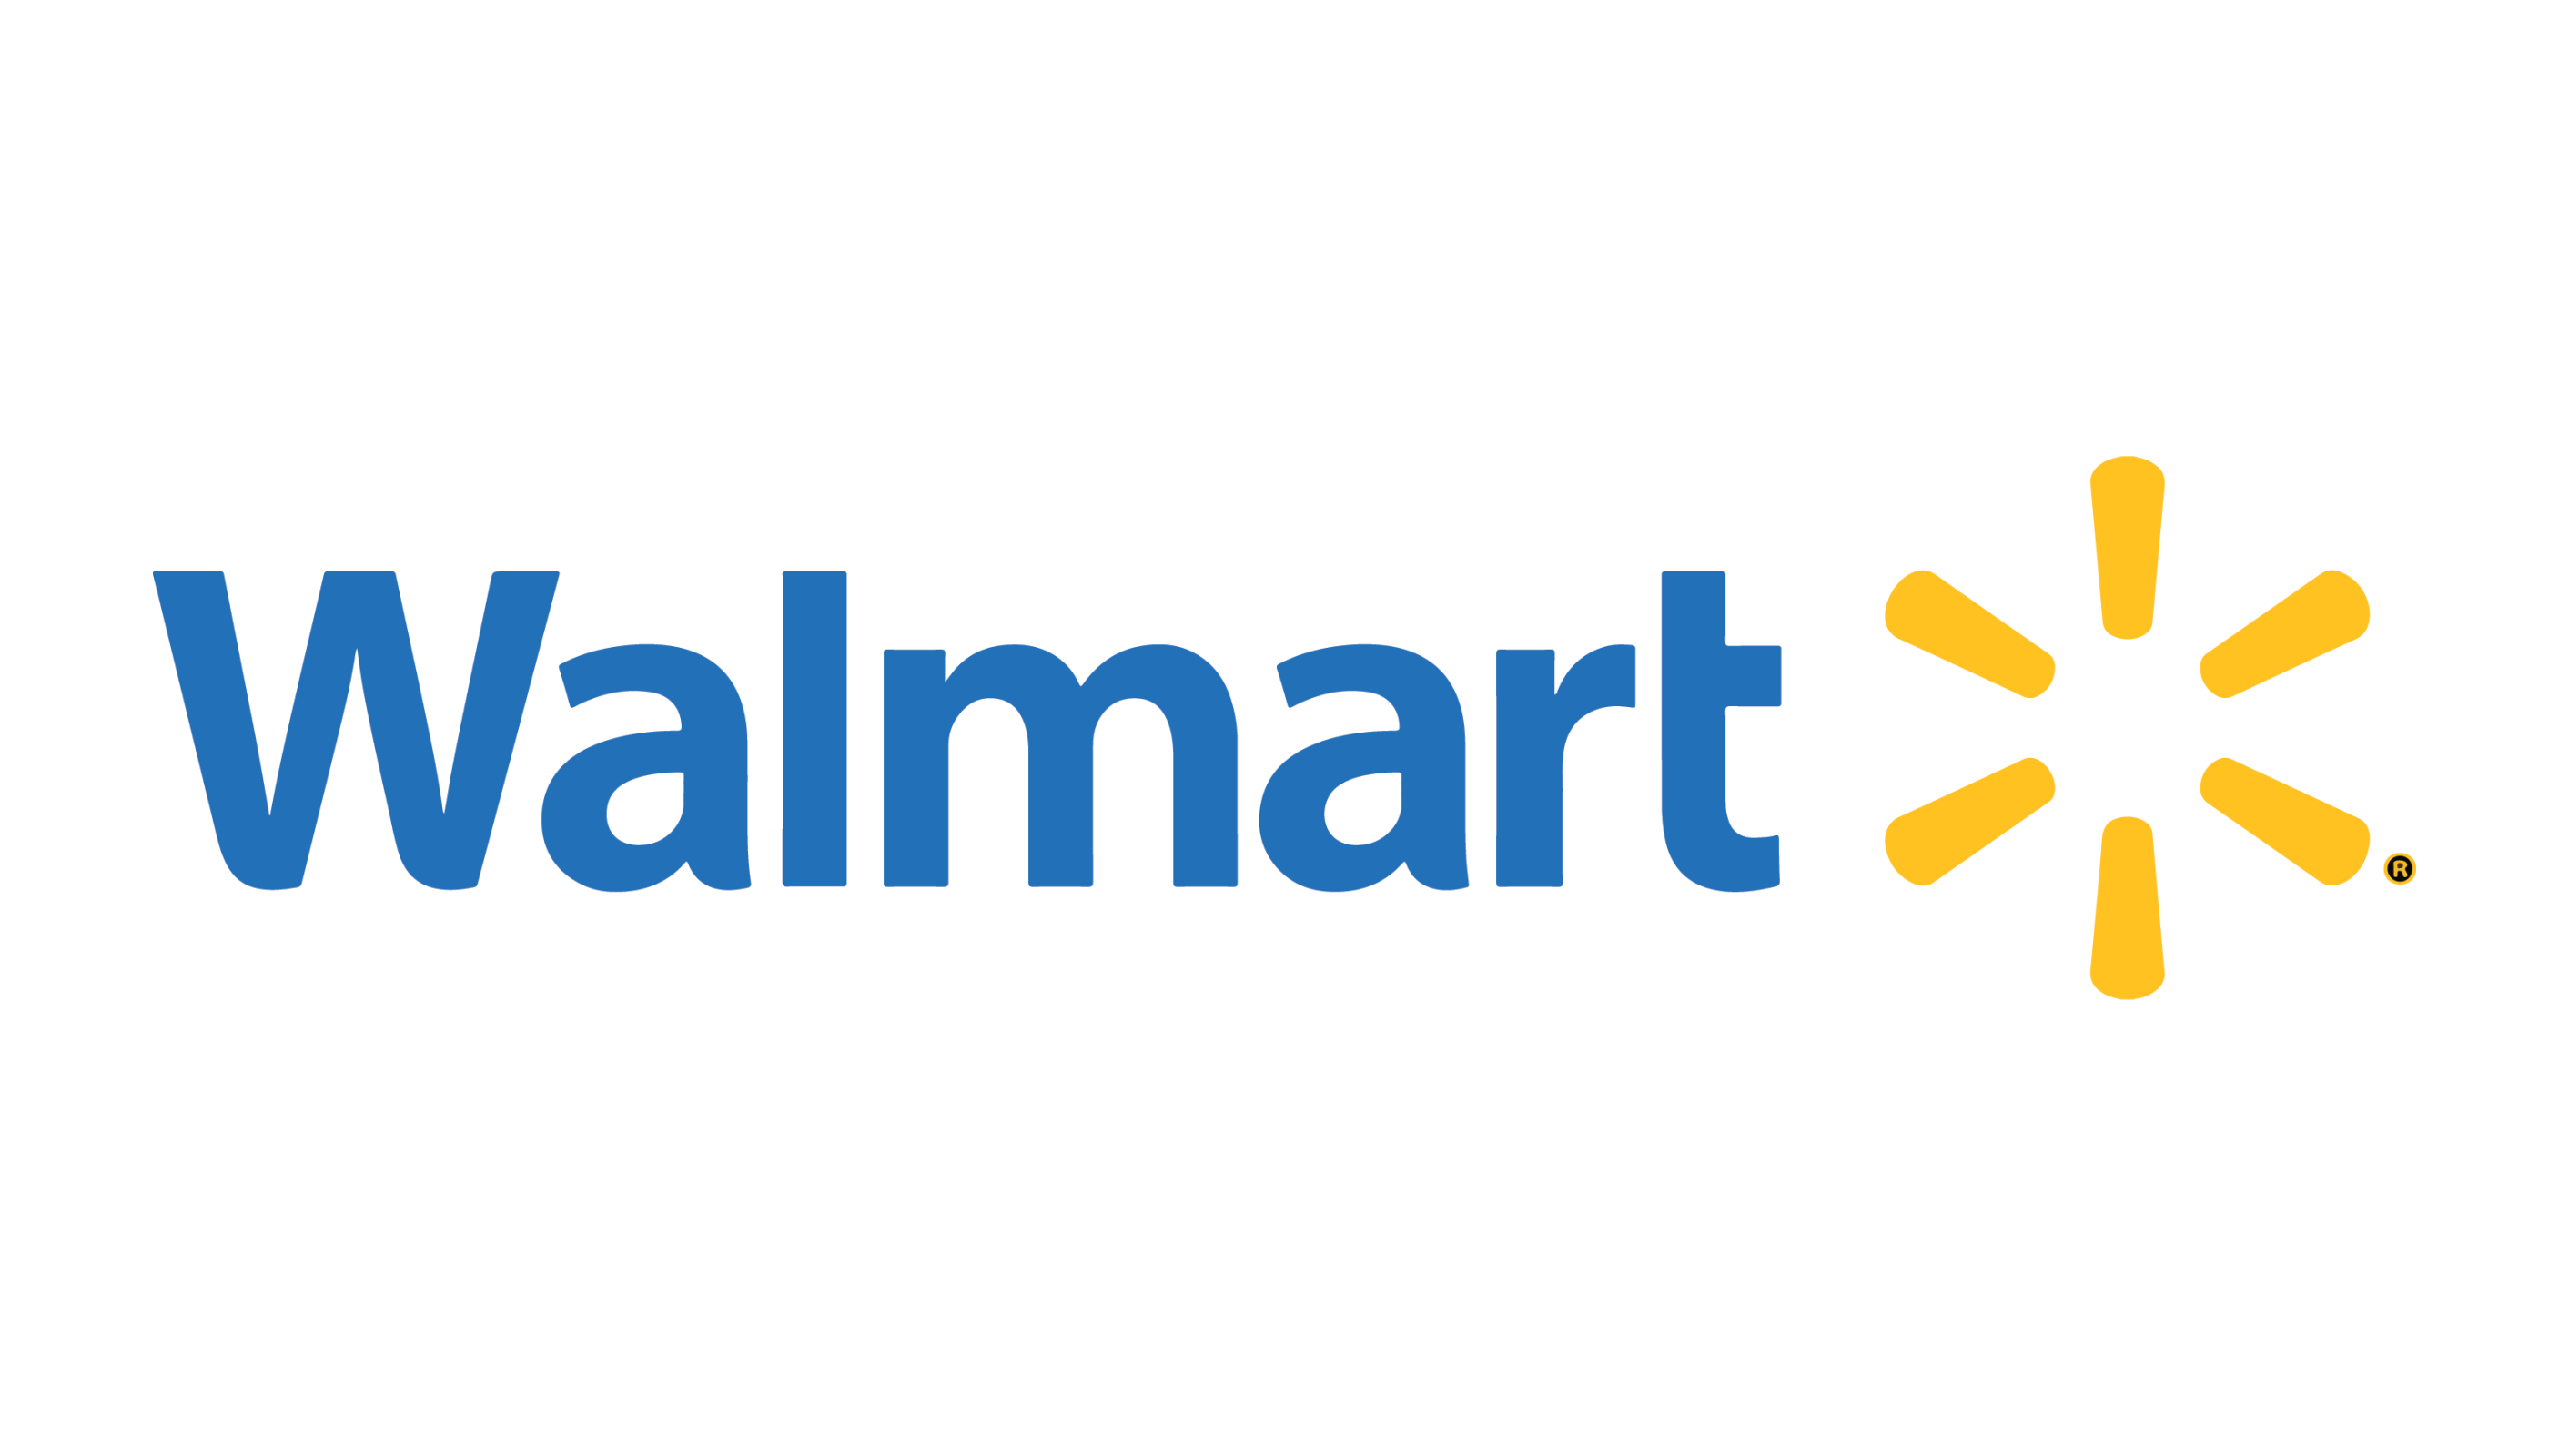 Logo for Wal-Mart Super Center